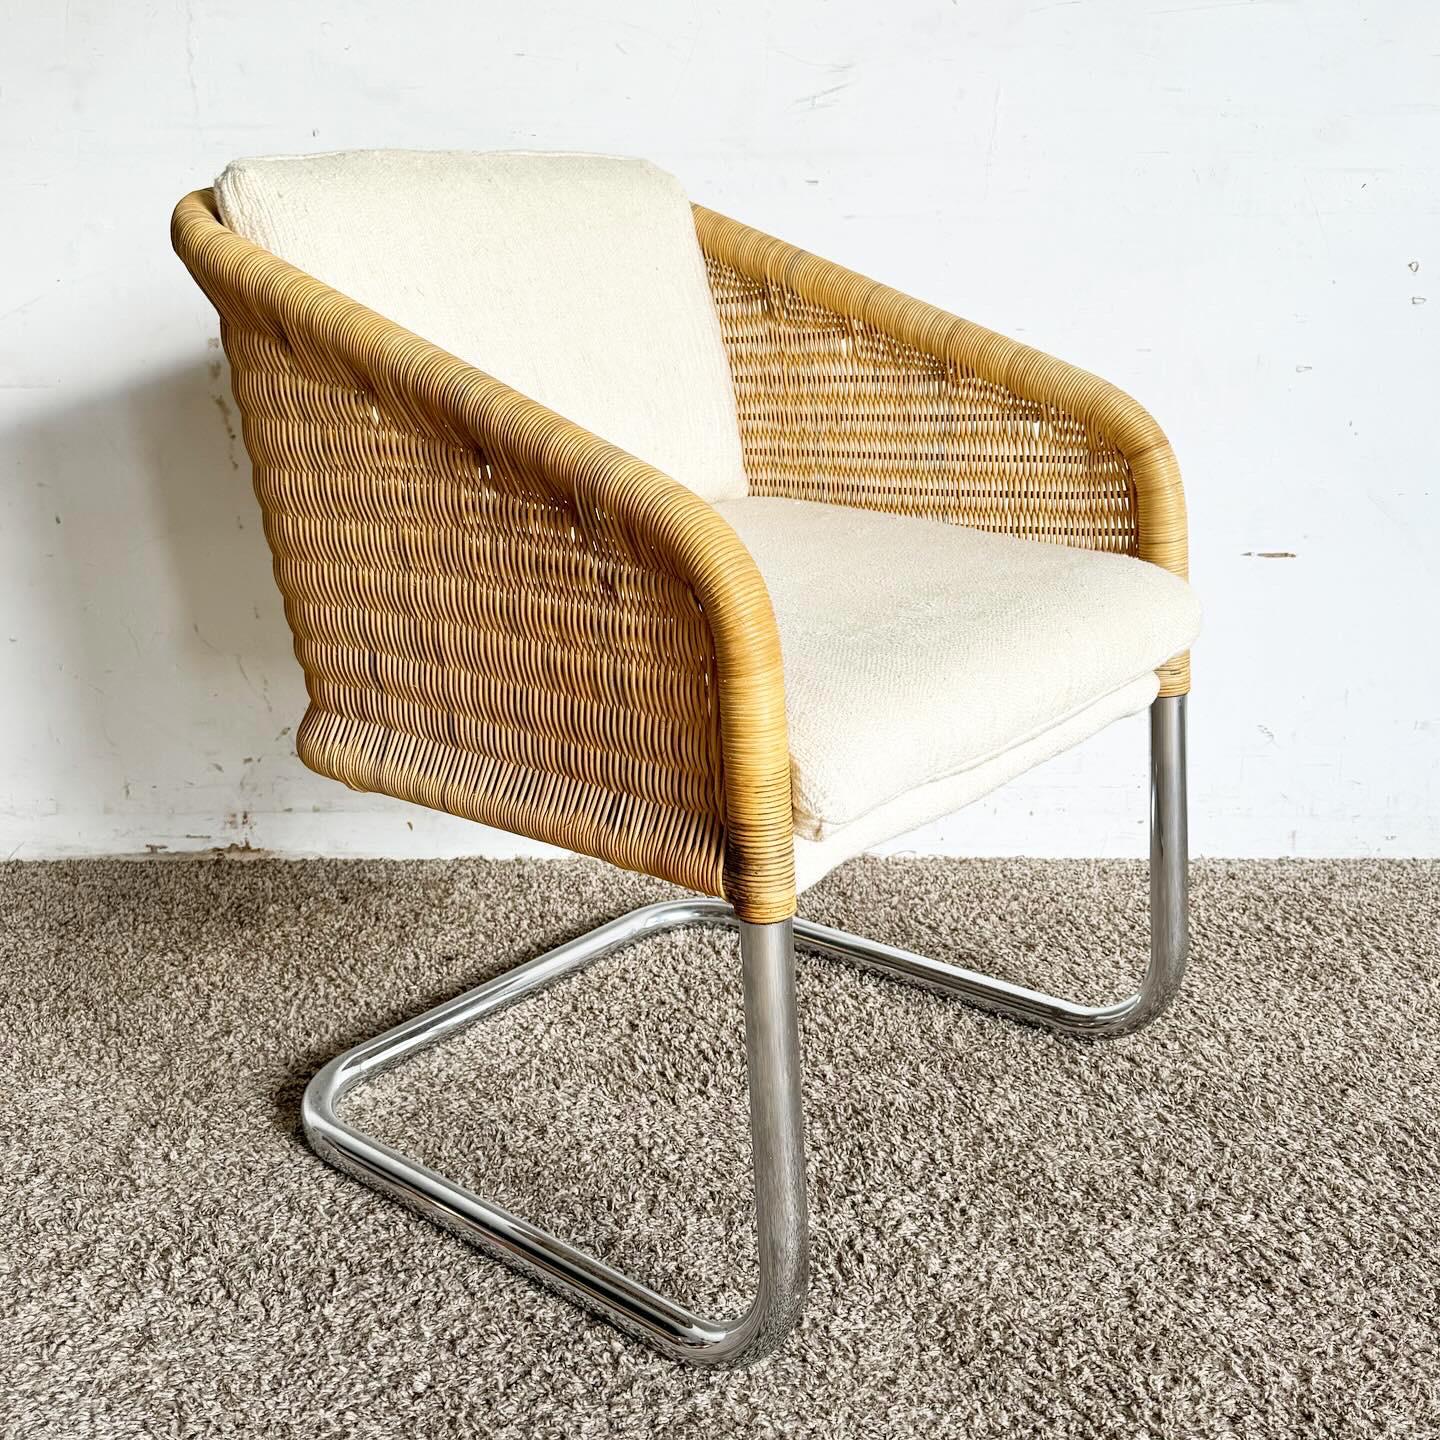 Der Mid Century Modern Boho Chrome and Wicker Cantilever Arm Chair ist eine auffallende Mischung von Stilen. Er verfügt über ein elegantes Chromgestell und eine Sitzfläche aus natürlichem Geflecht, die mit ihrem schwebenden Freischwinger-Design